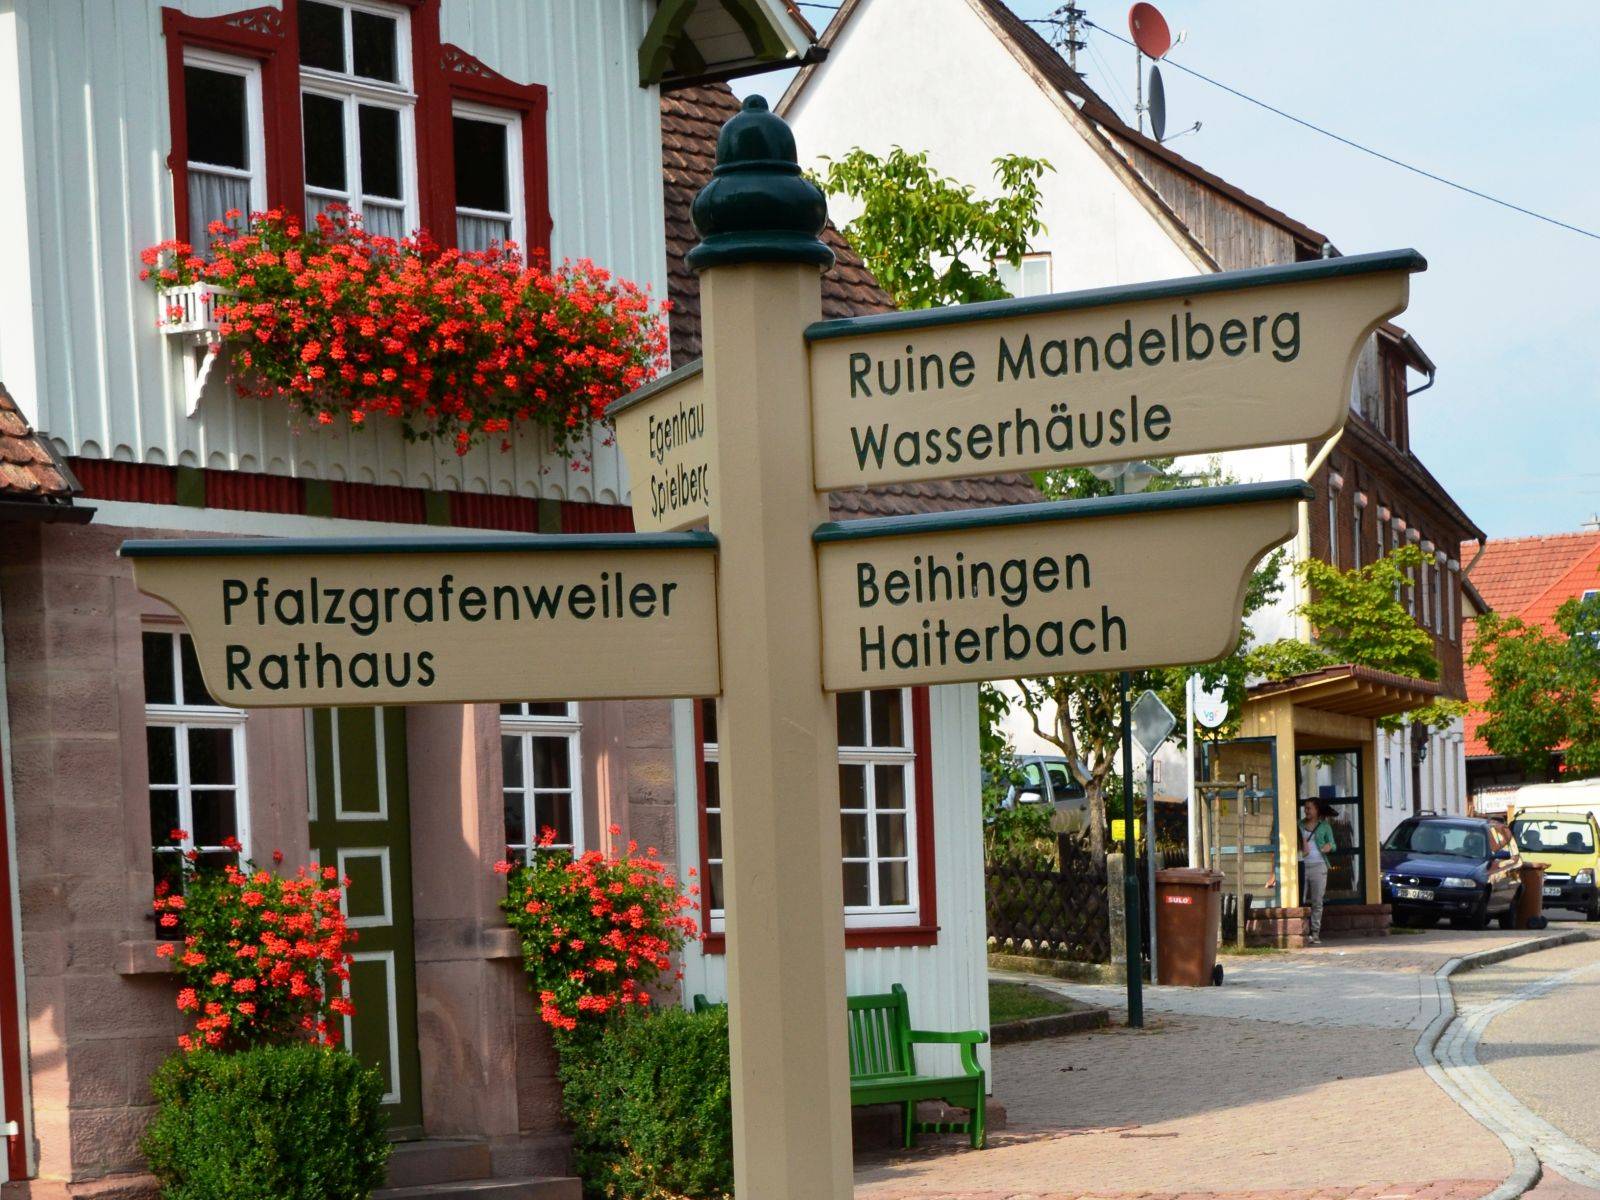                                                     Schilder in Bösingen                                    